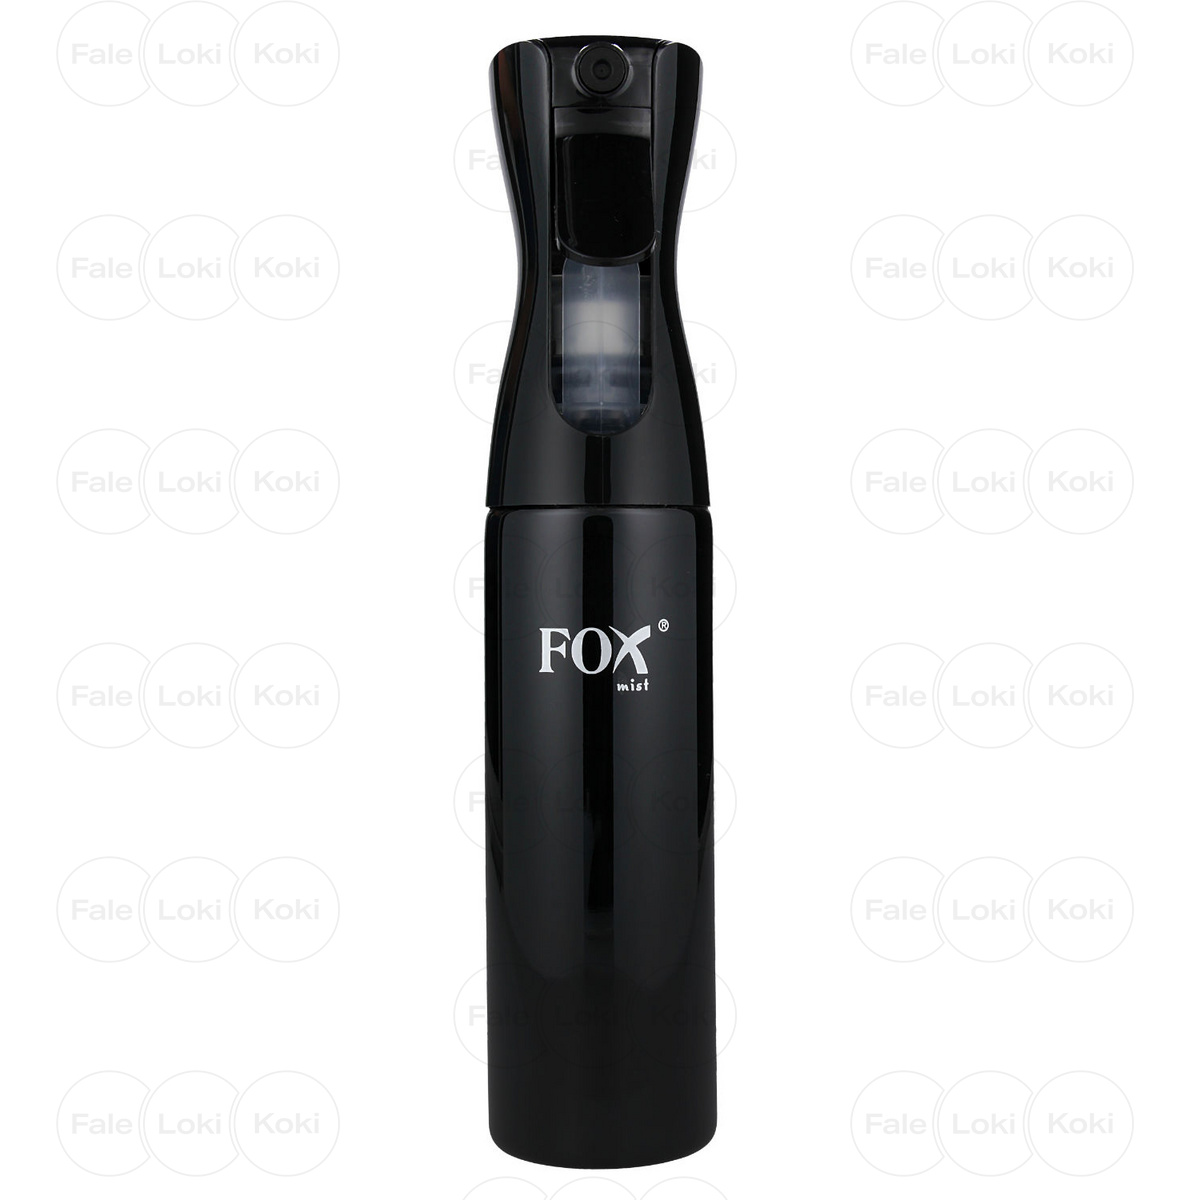 FOX rozpylacz czarny Mist 300 ml